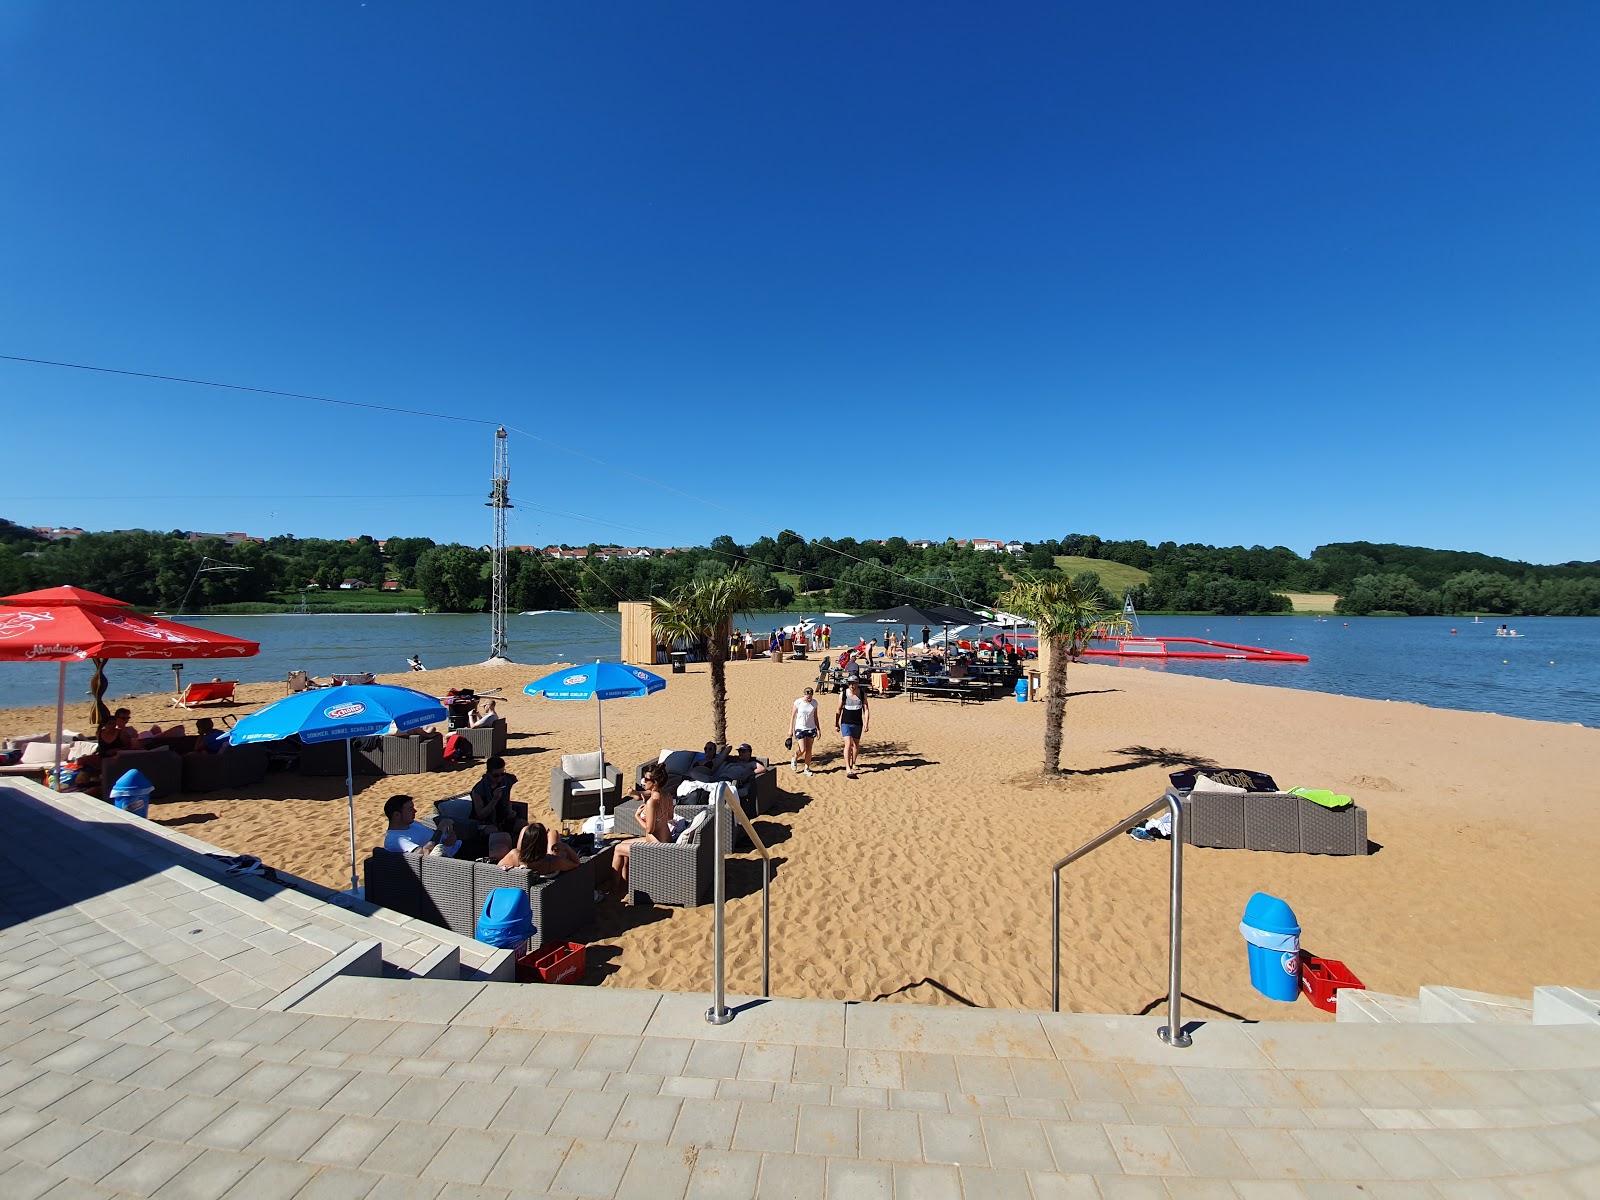 Spielplatz Wakepark Brombachsee'in fotoğrafı geniş plaj ile birlikte